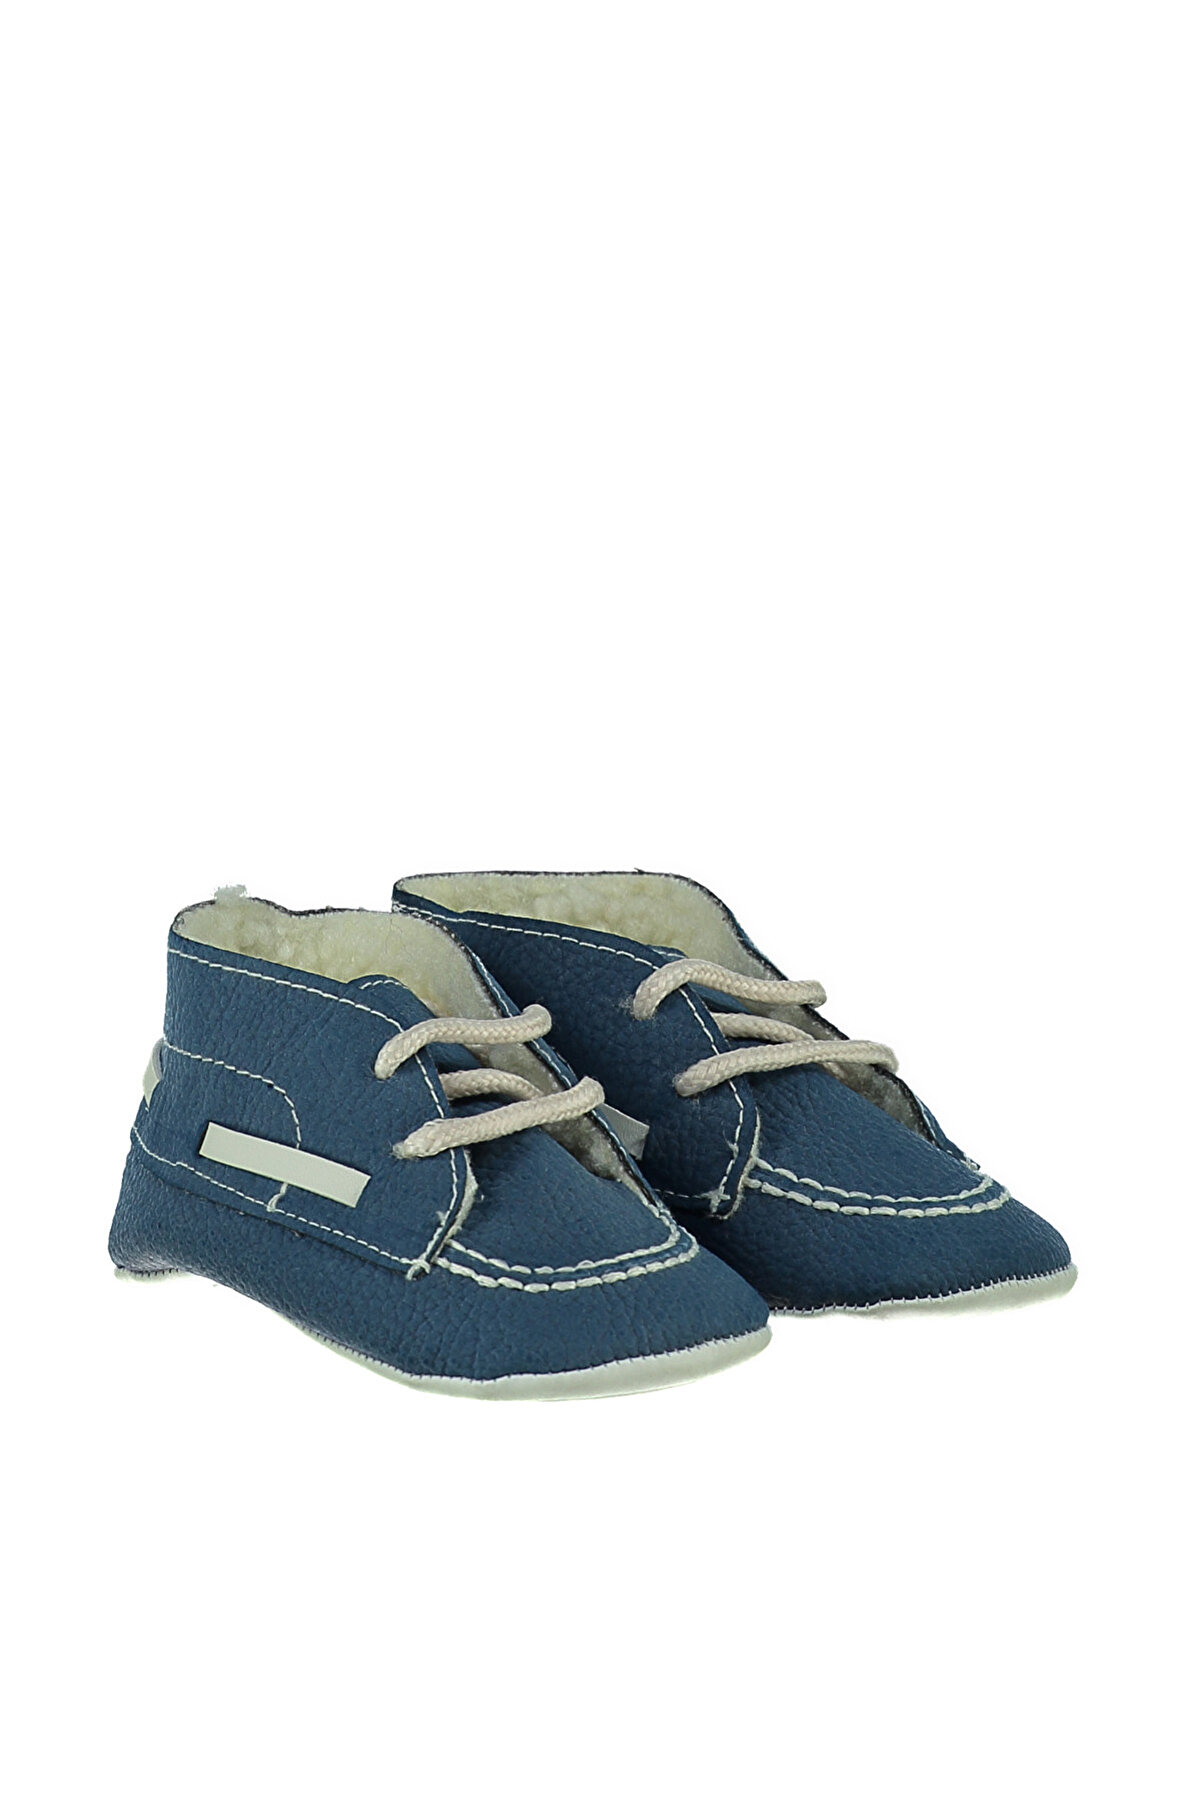 Koton Mavi Erkek Bebek Ayakkabı 6KMB22025AA